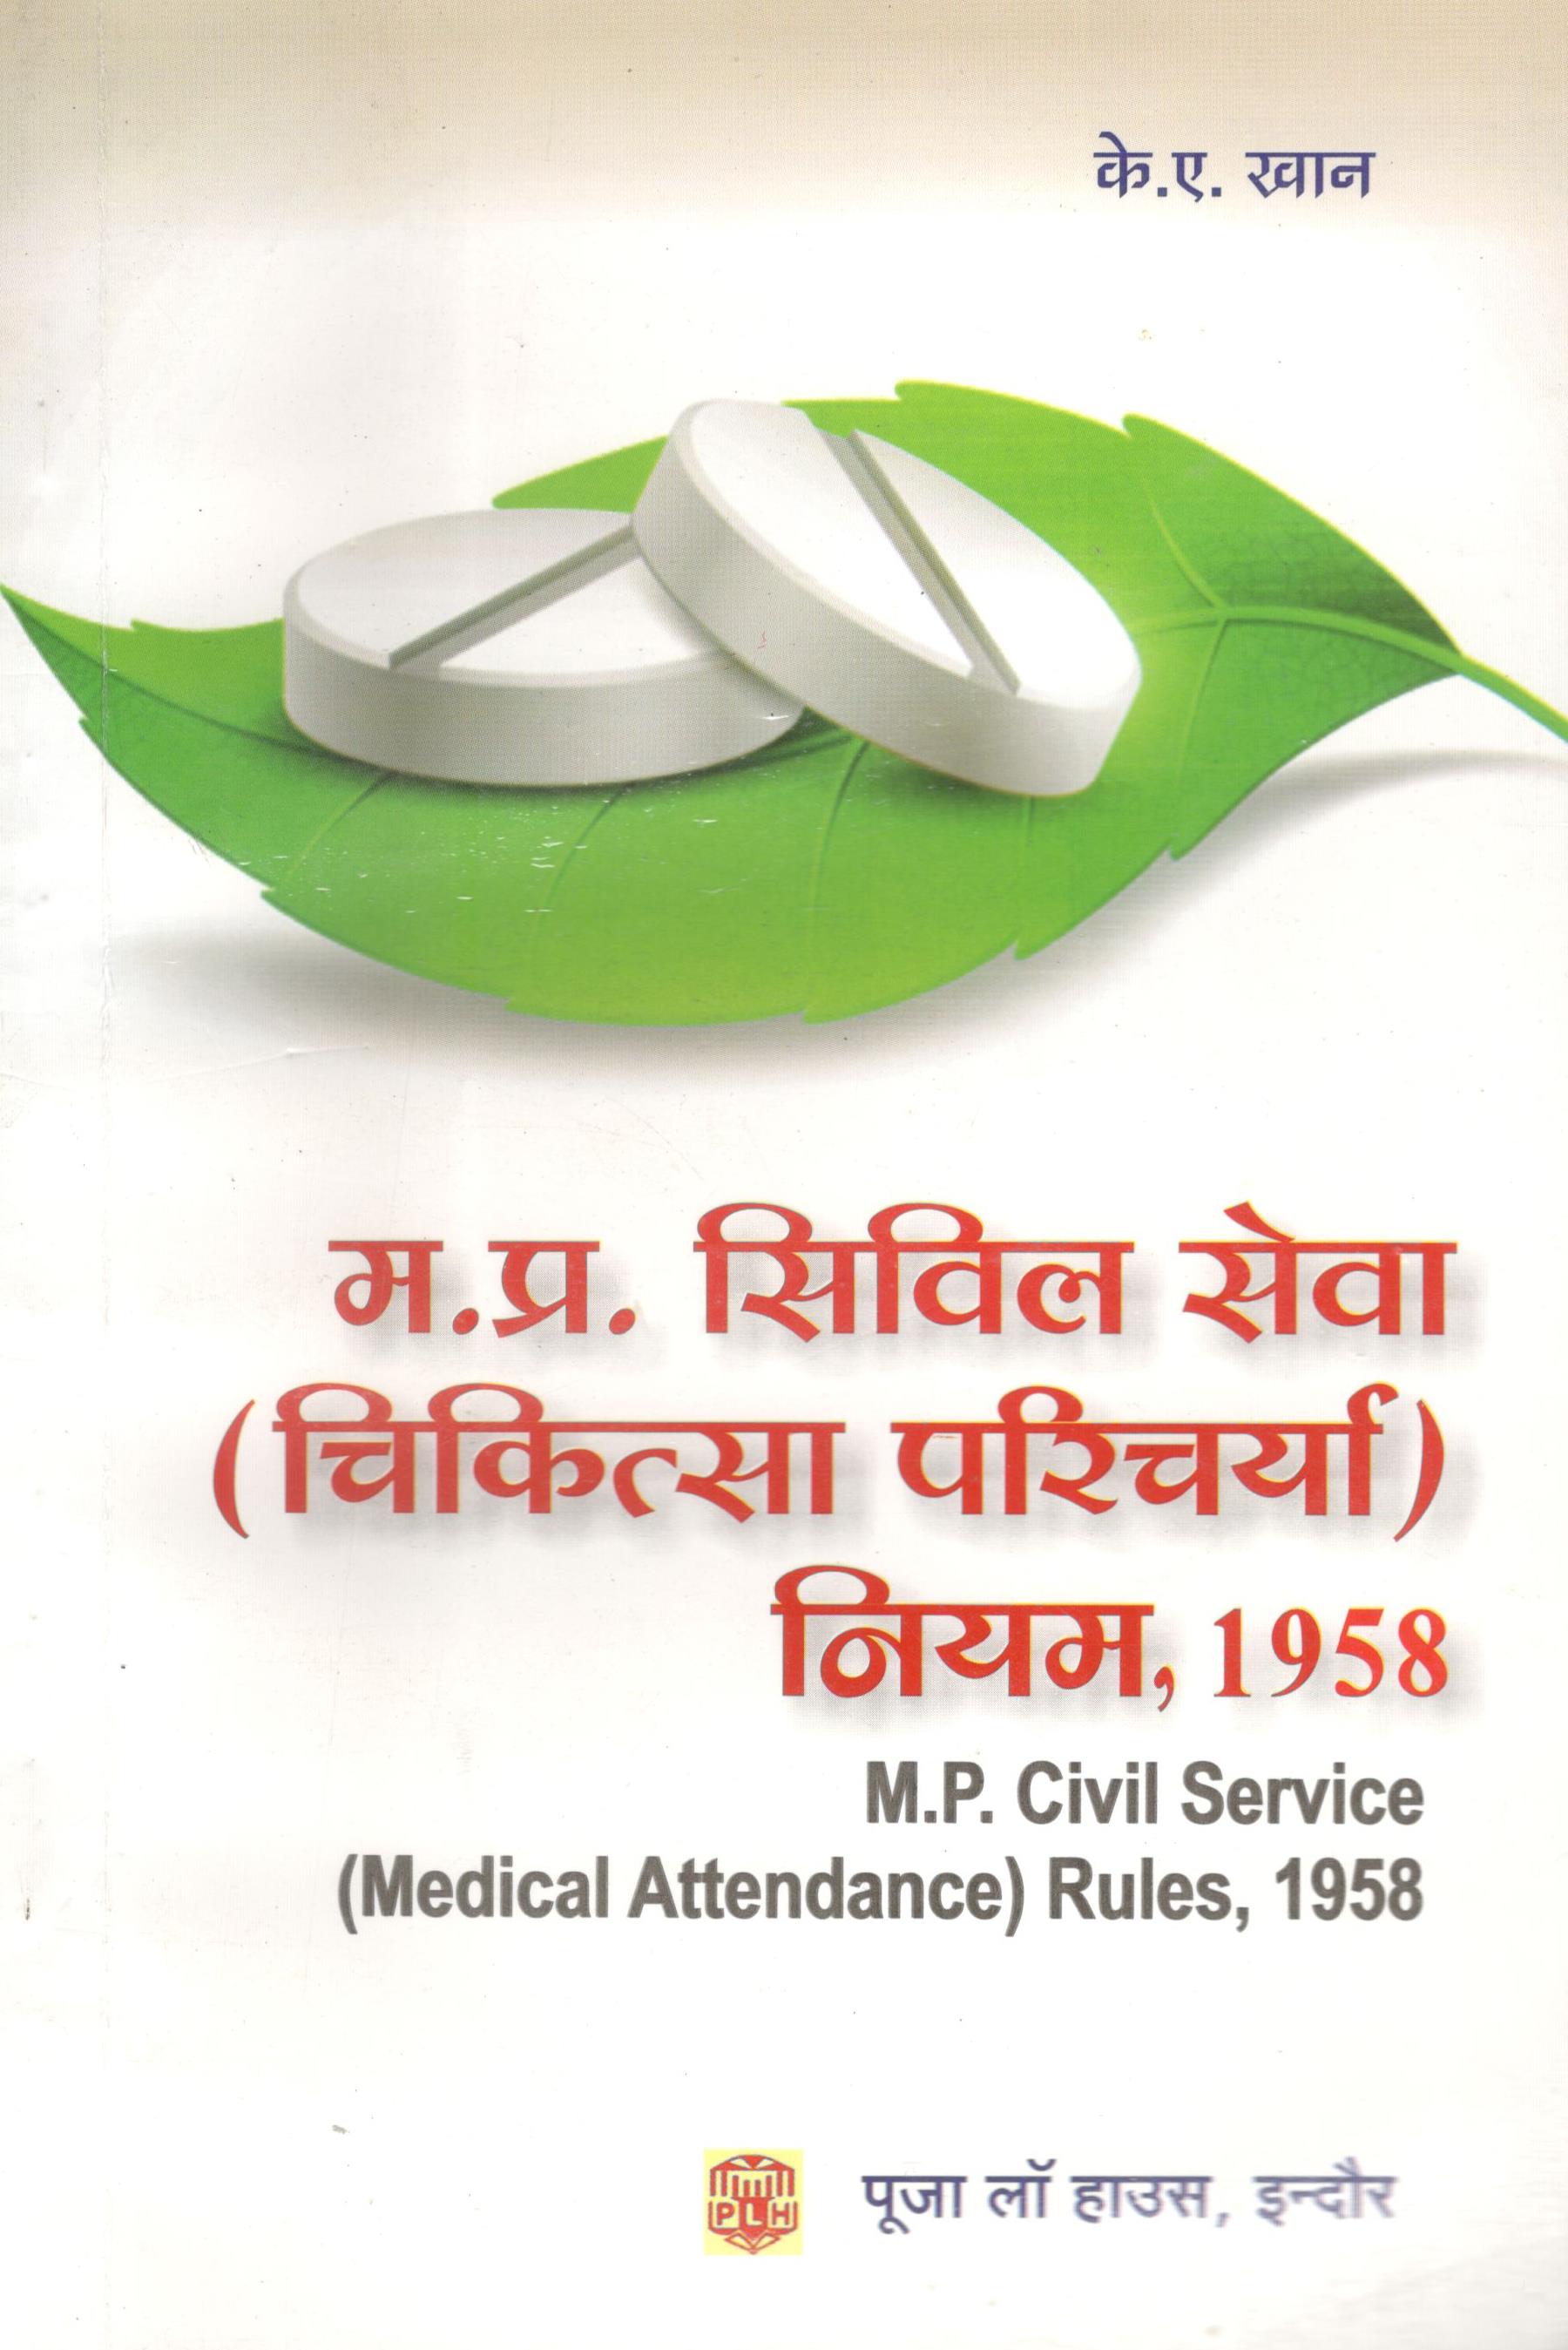 के.ए. खान - मध्य प्रदेश सिविल सेवा (चिकित्सा परिचर्या) नियम, 1958 / M.P. Civil Service (Medical Attendance) Rules, 1958 